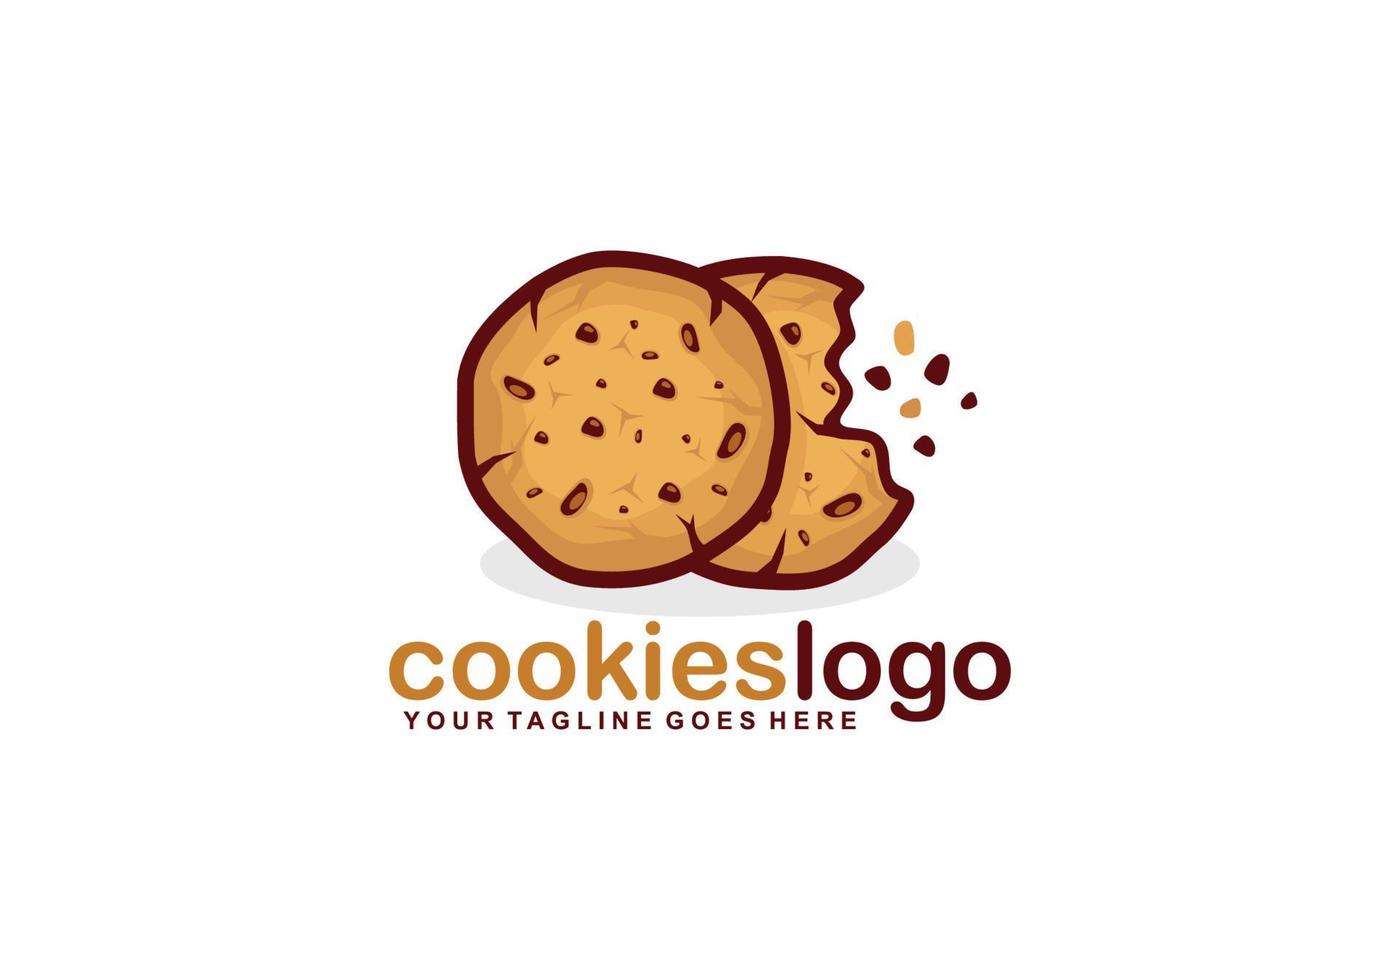 Cookies logo design vector